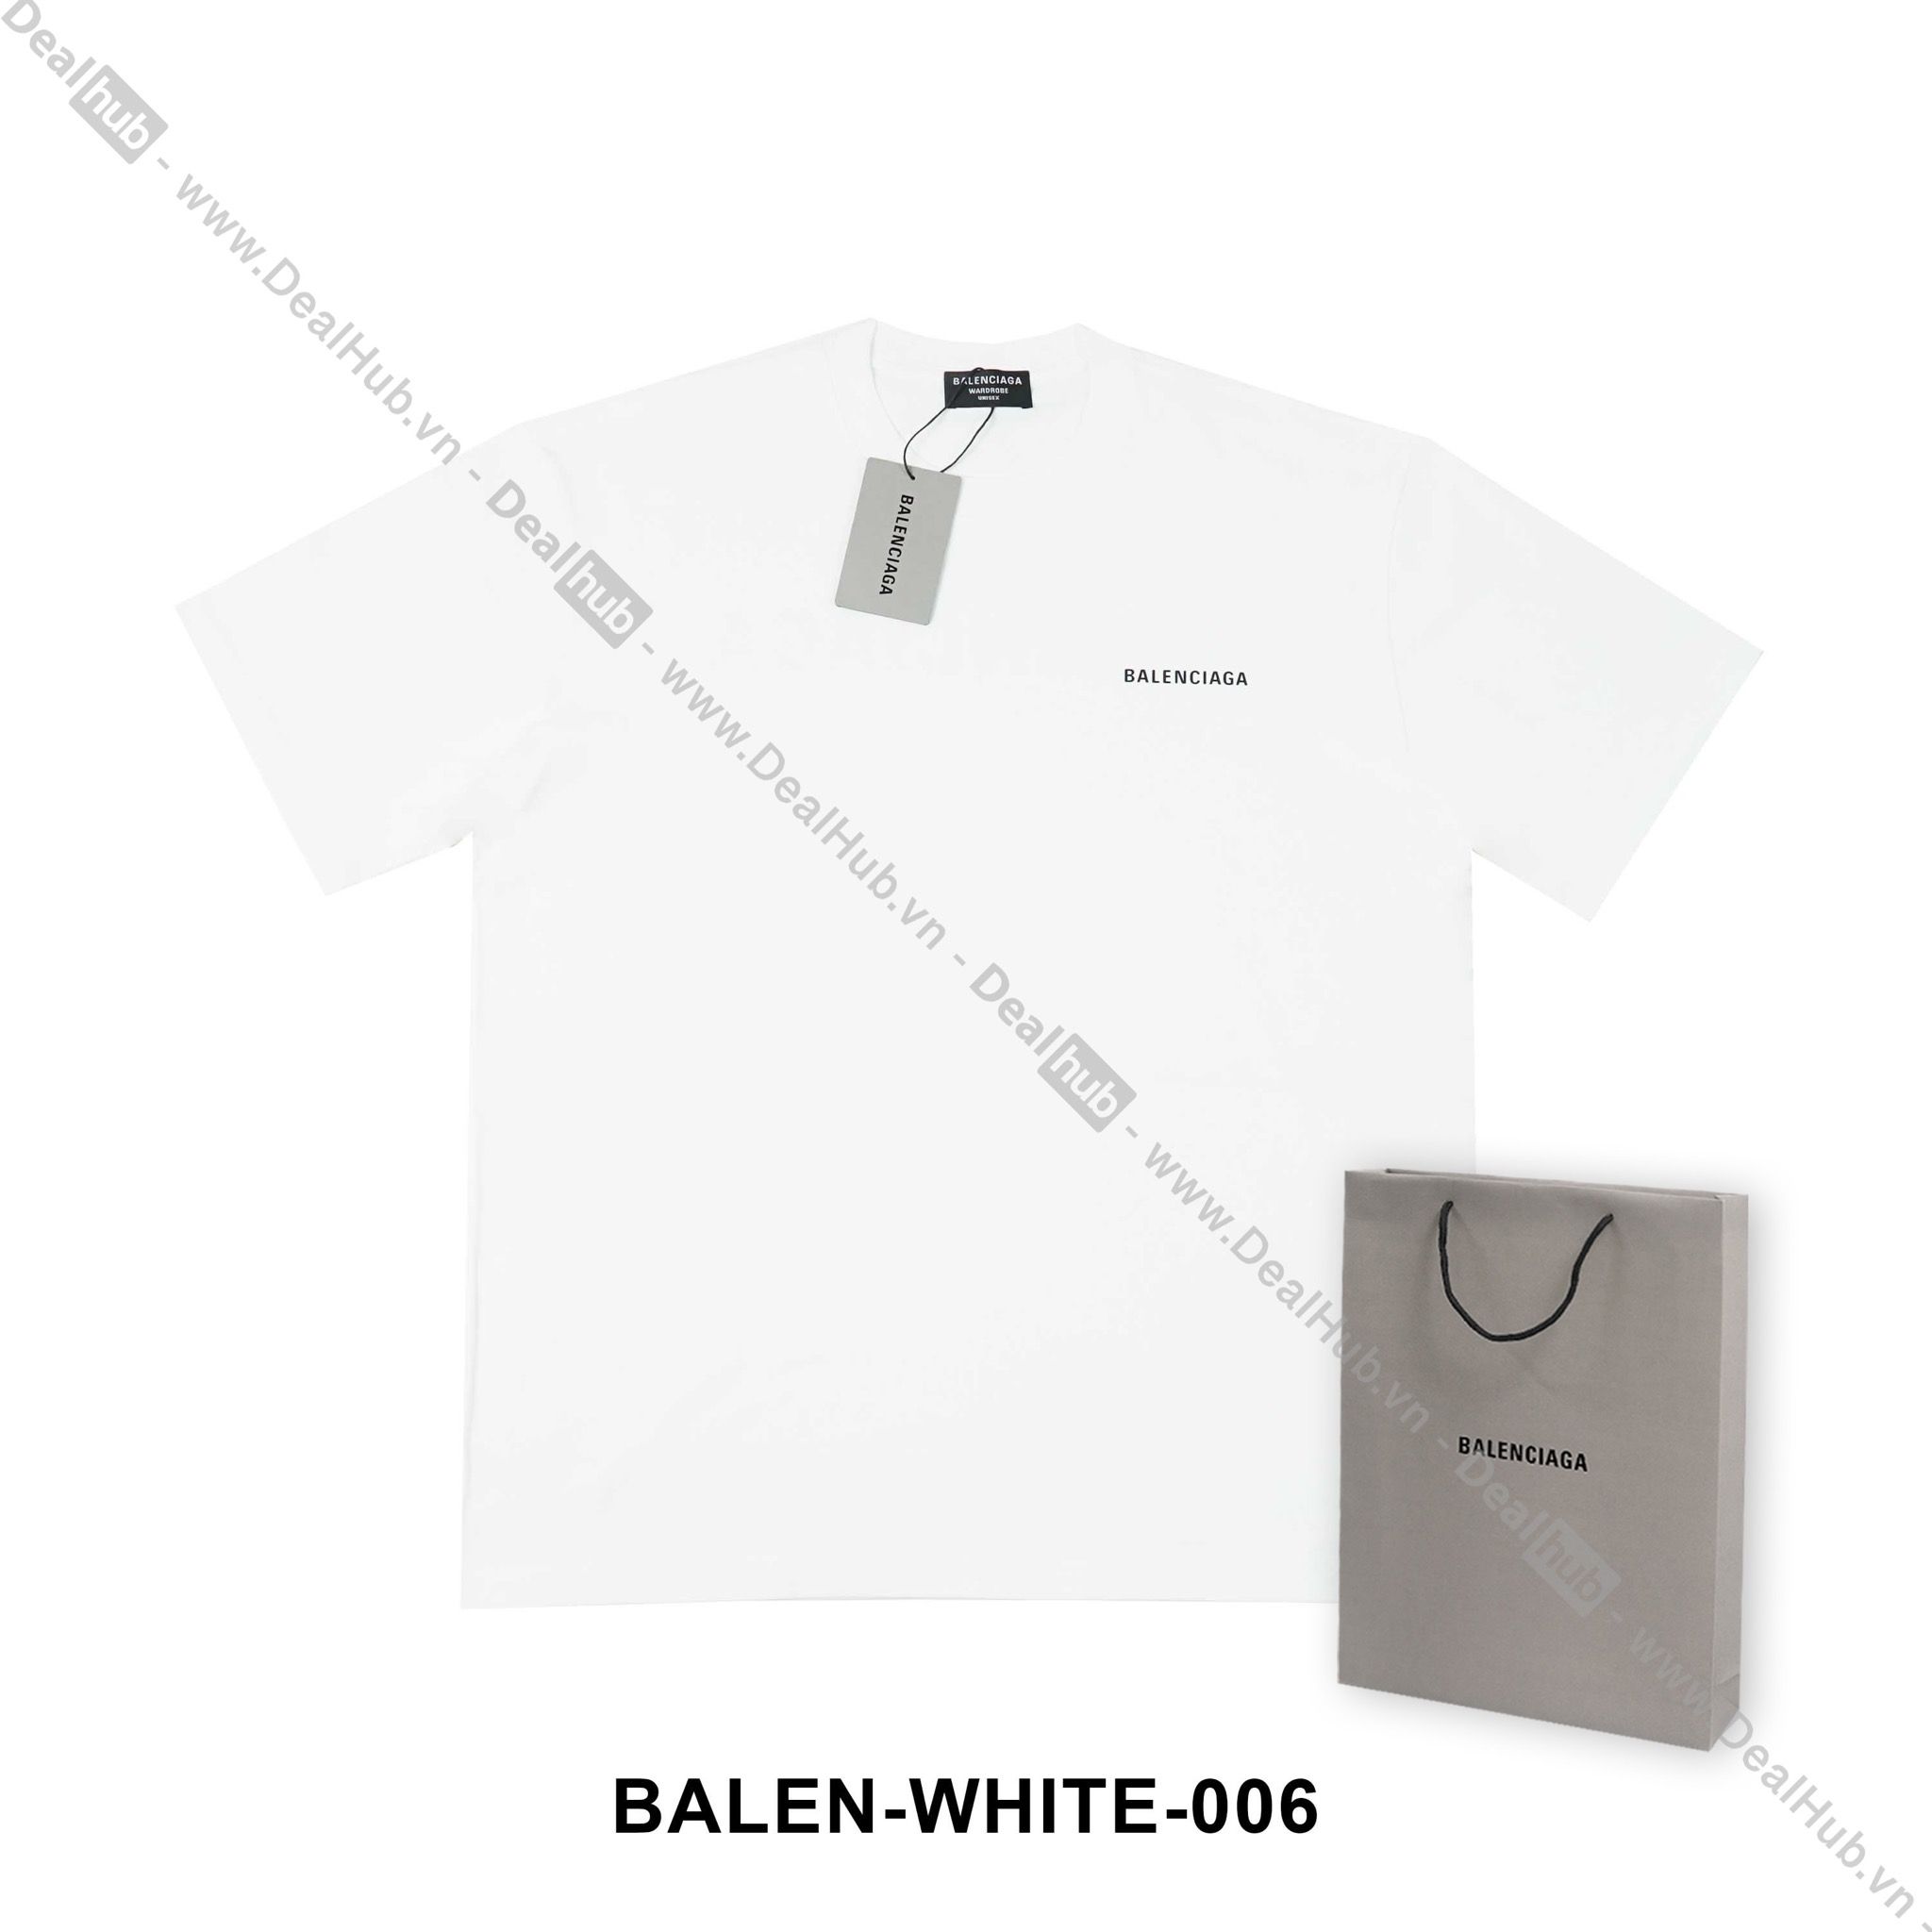 Balenciaga TShirts for Men  Shop Now on FARFETCH